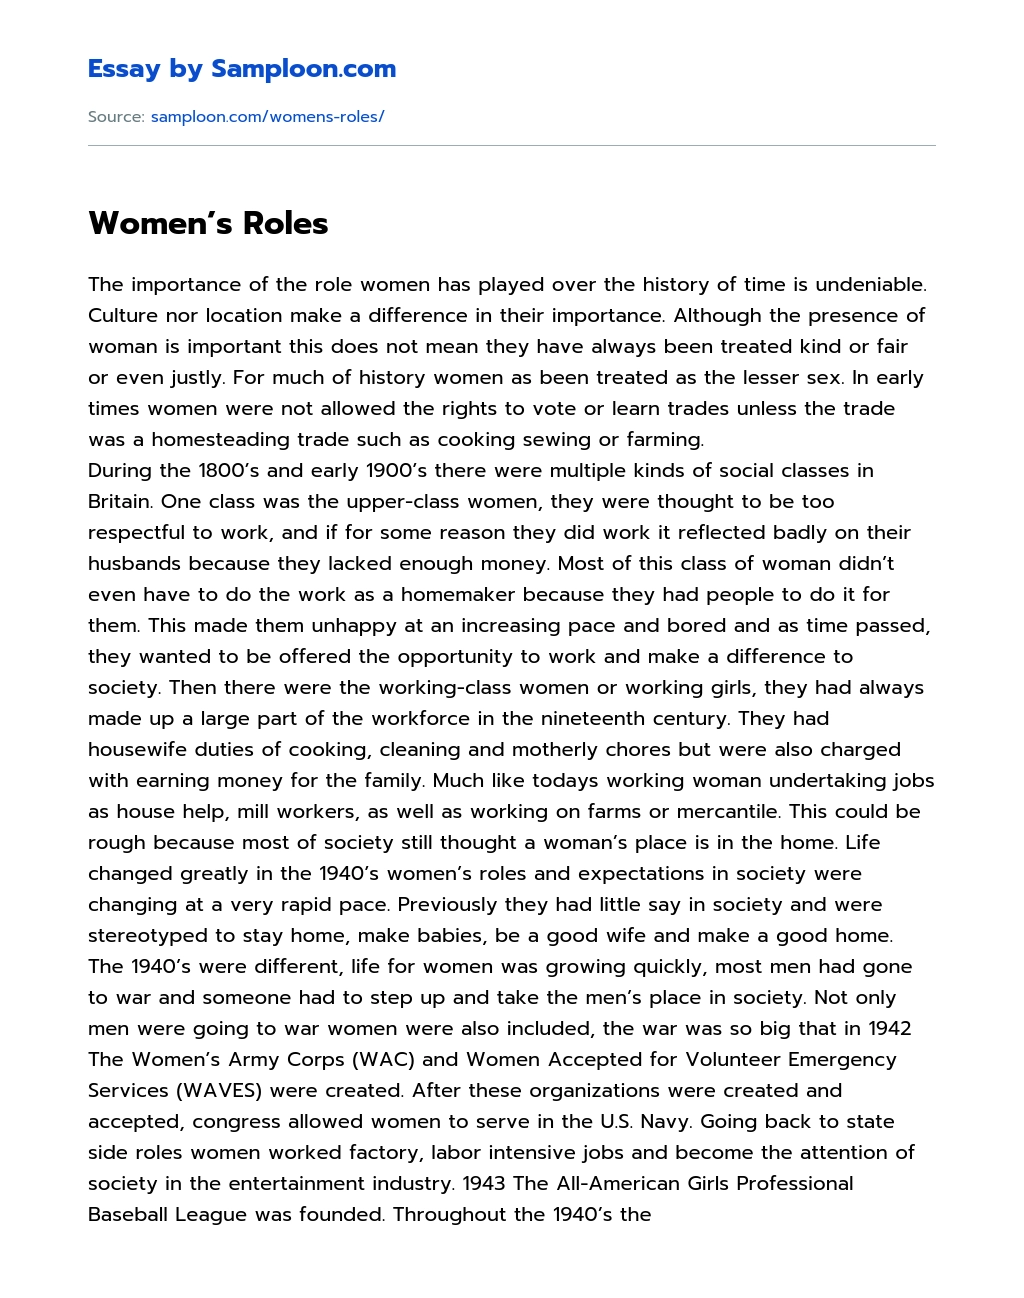 Women’s Roles essay